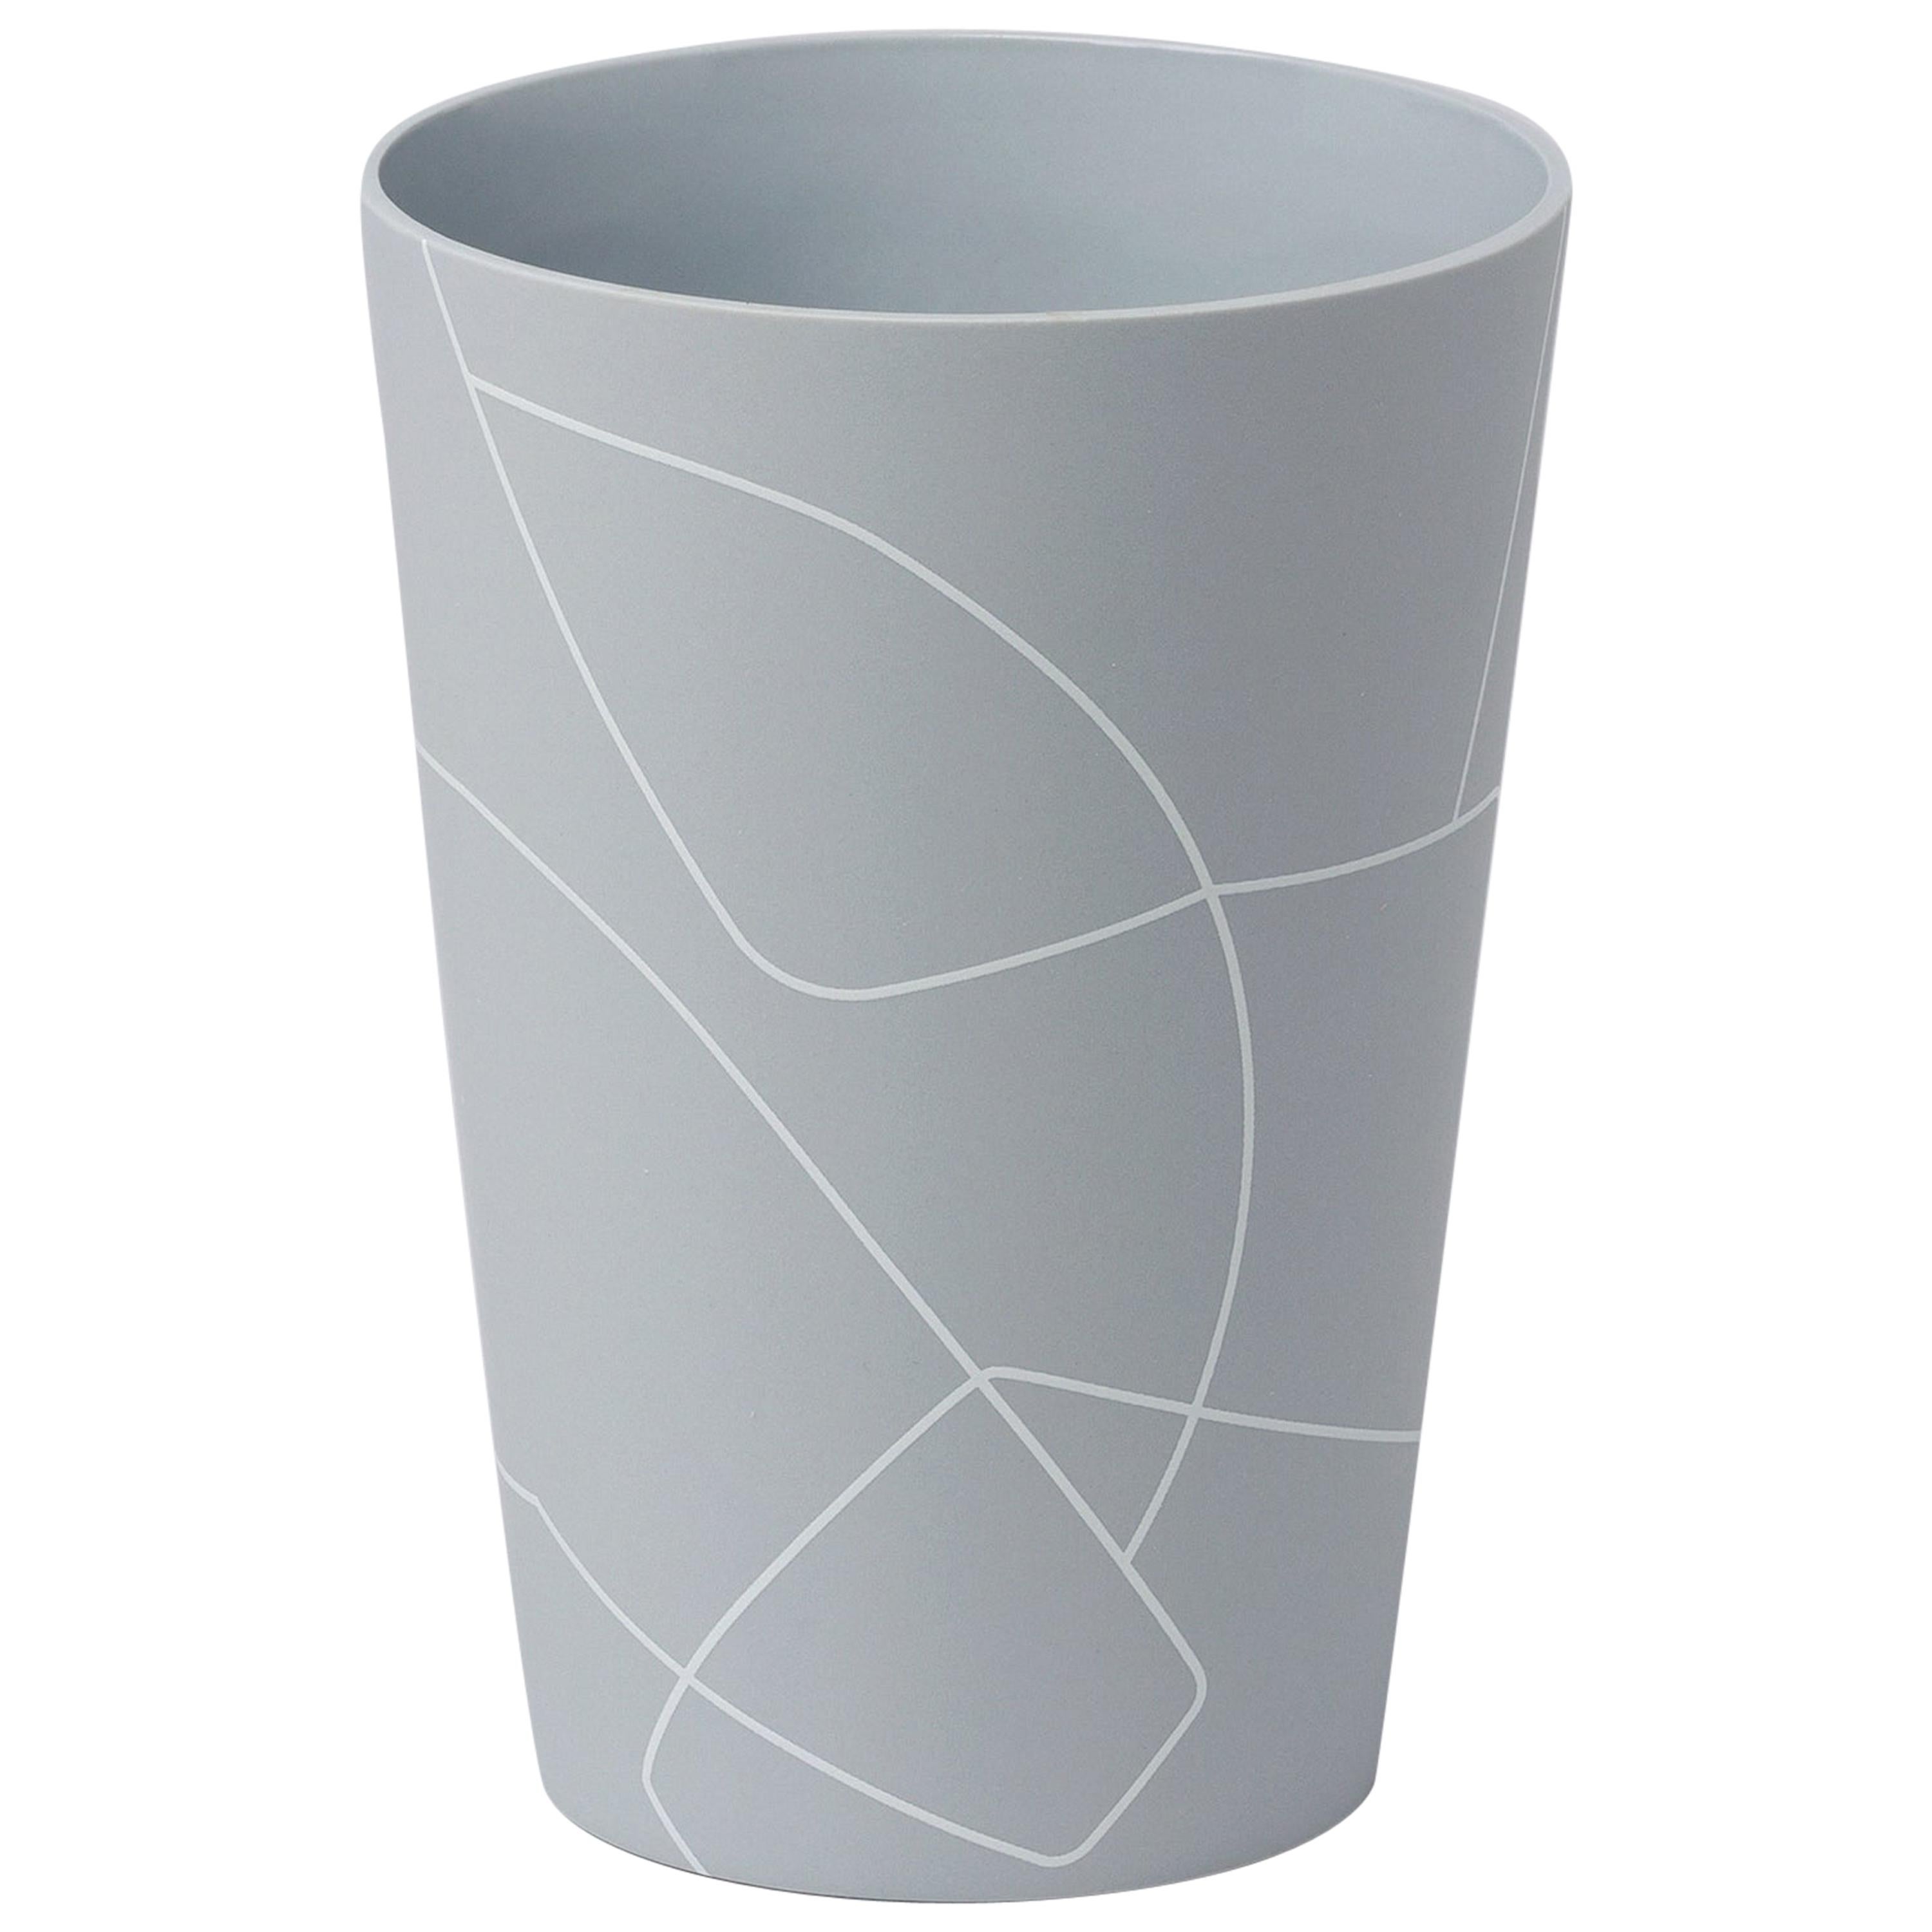 Vase aus konischer Keramik mit grafischem Linienmuster, matt und mittelgrau umgekehrt